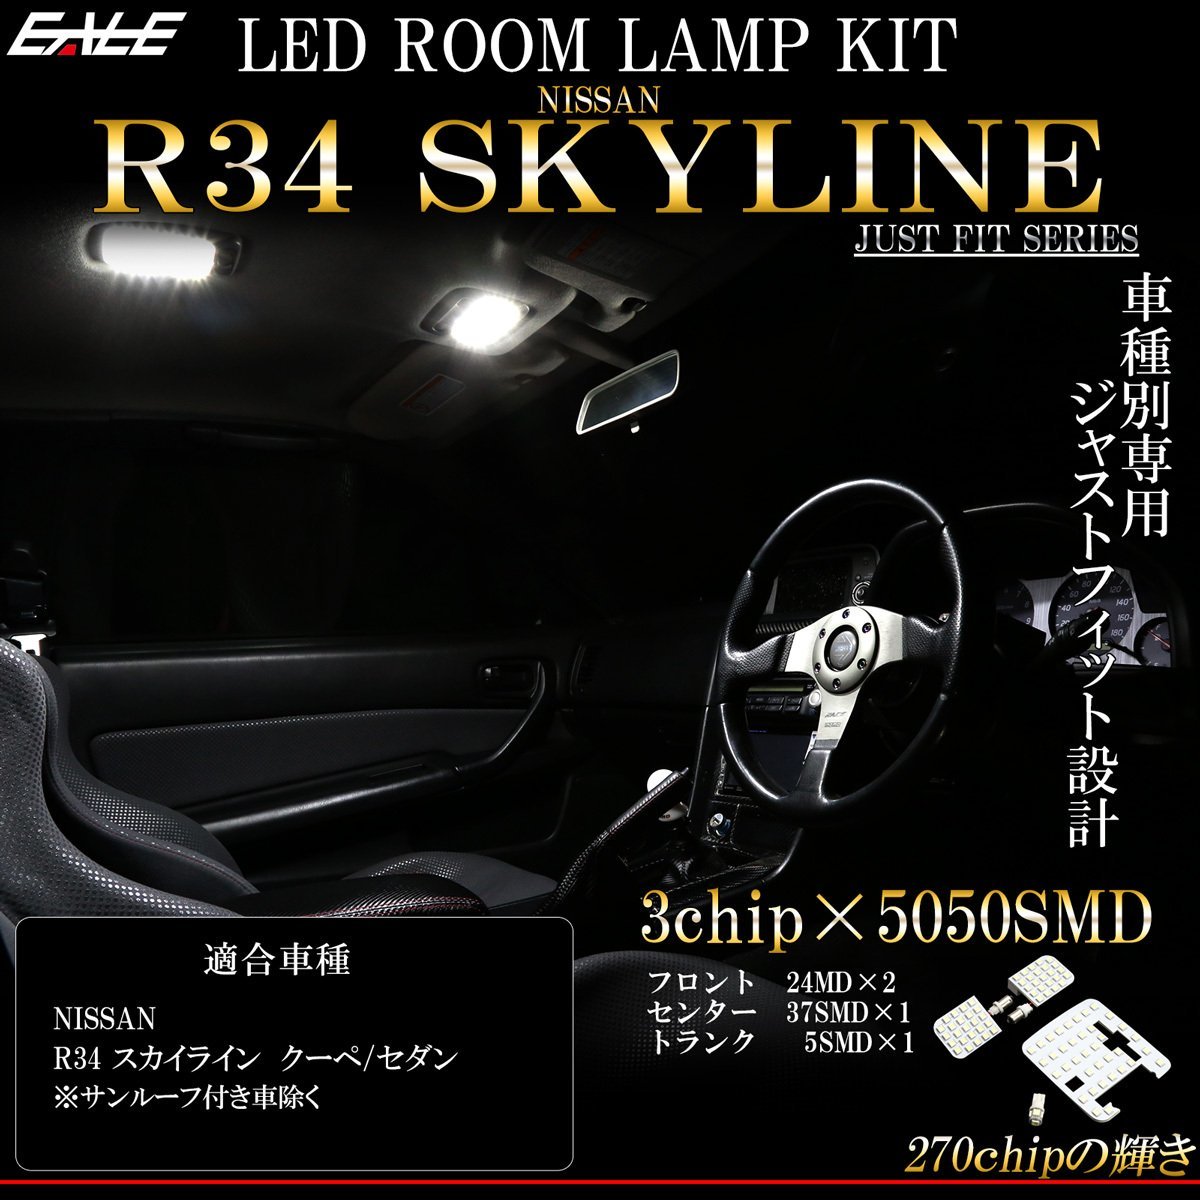 ニッサン R34 スカイライン 2ドア クーペ GT-R 4ドア セダン LED ルームランプ キット 純白 7000K ホワイト ER34 BNR34 HR34 R-275-S_画像1